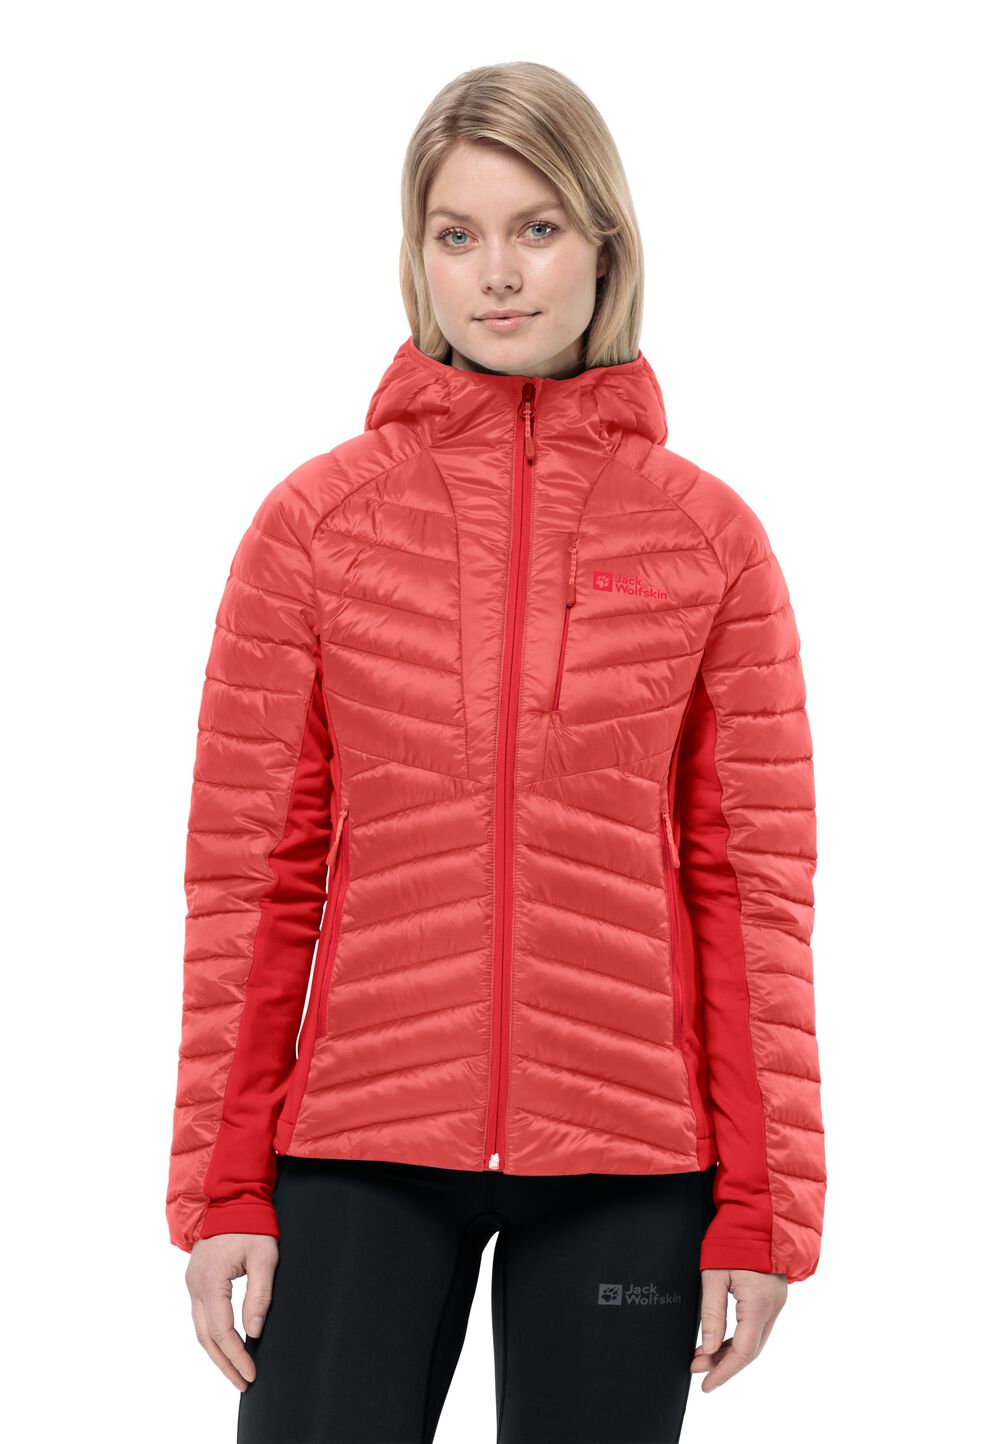 Jack Wolfskin Isolationsjacke Damen Routeburn Pro Ins Jacket Women XL rot vibrant red von Jack Wolfskin